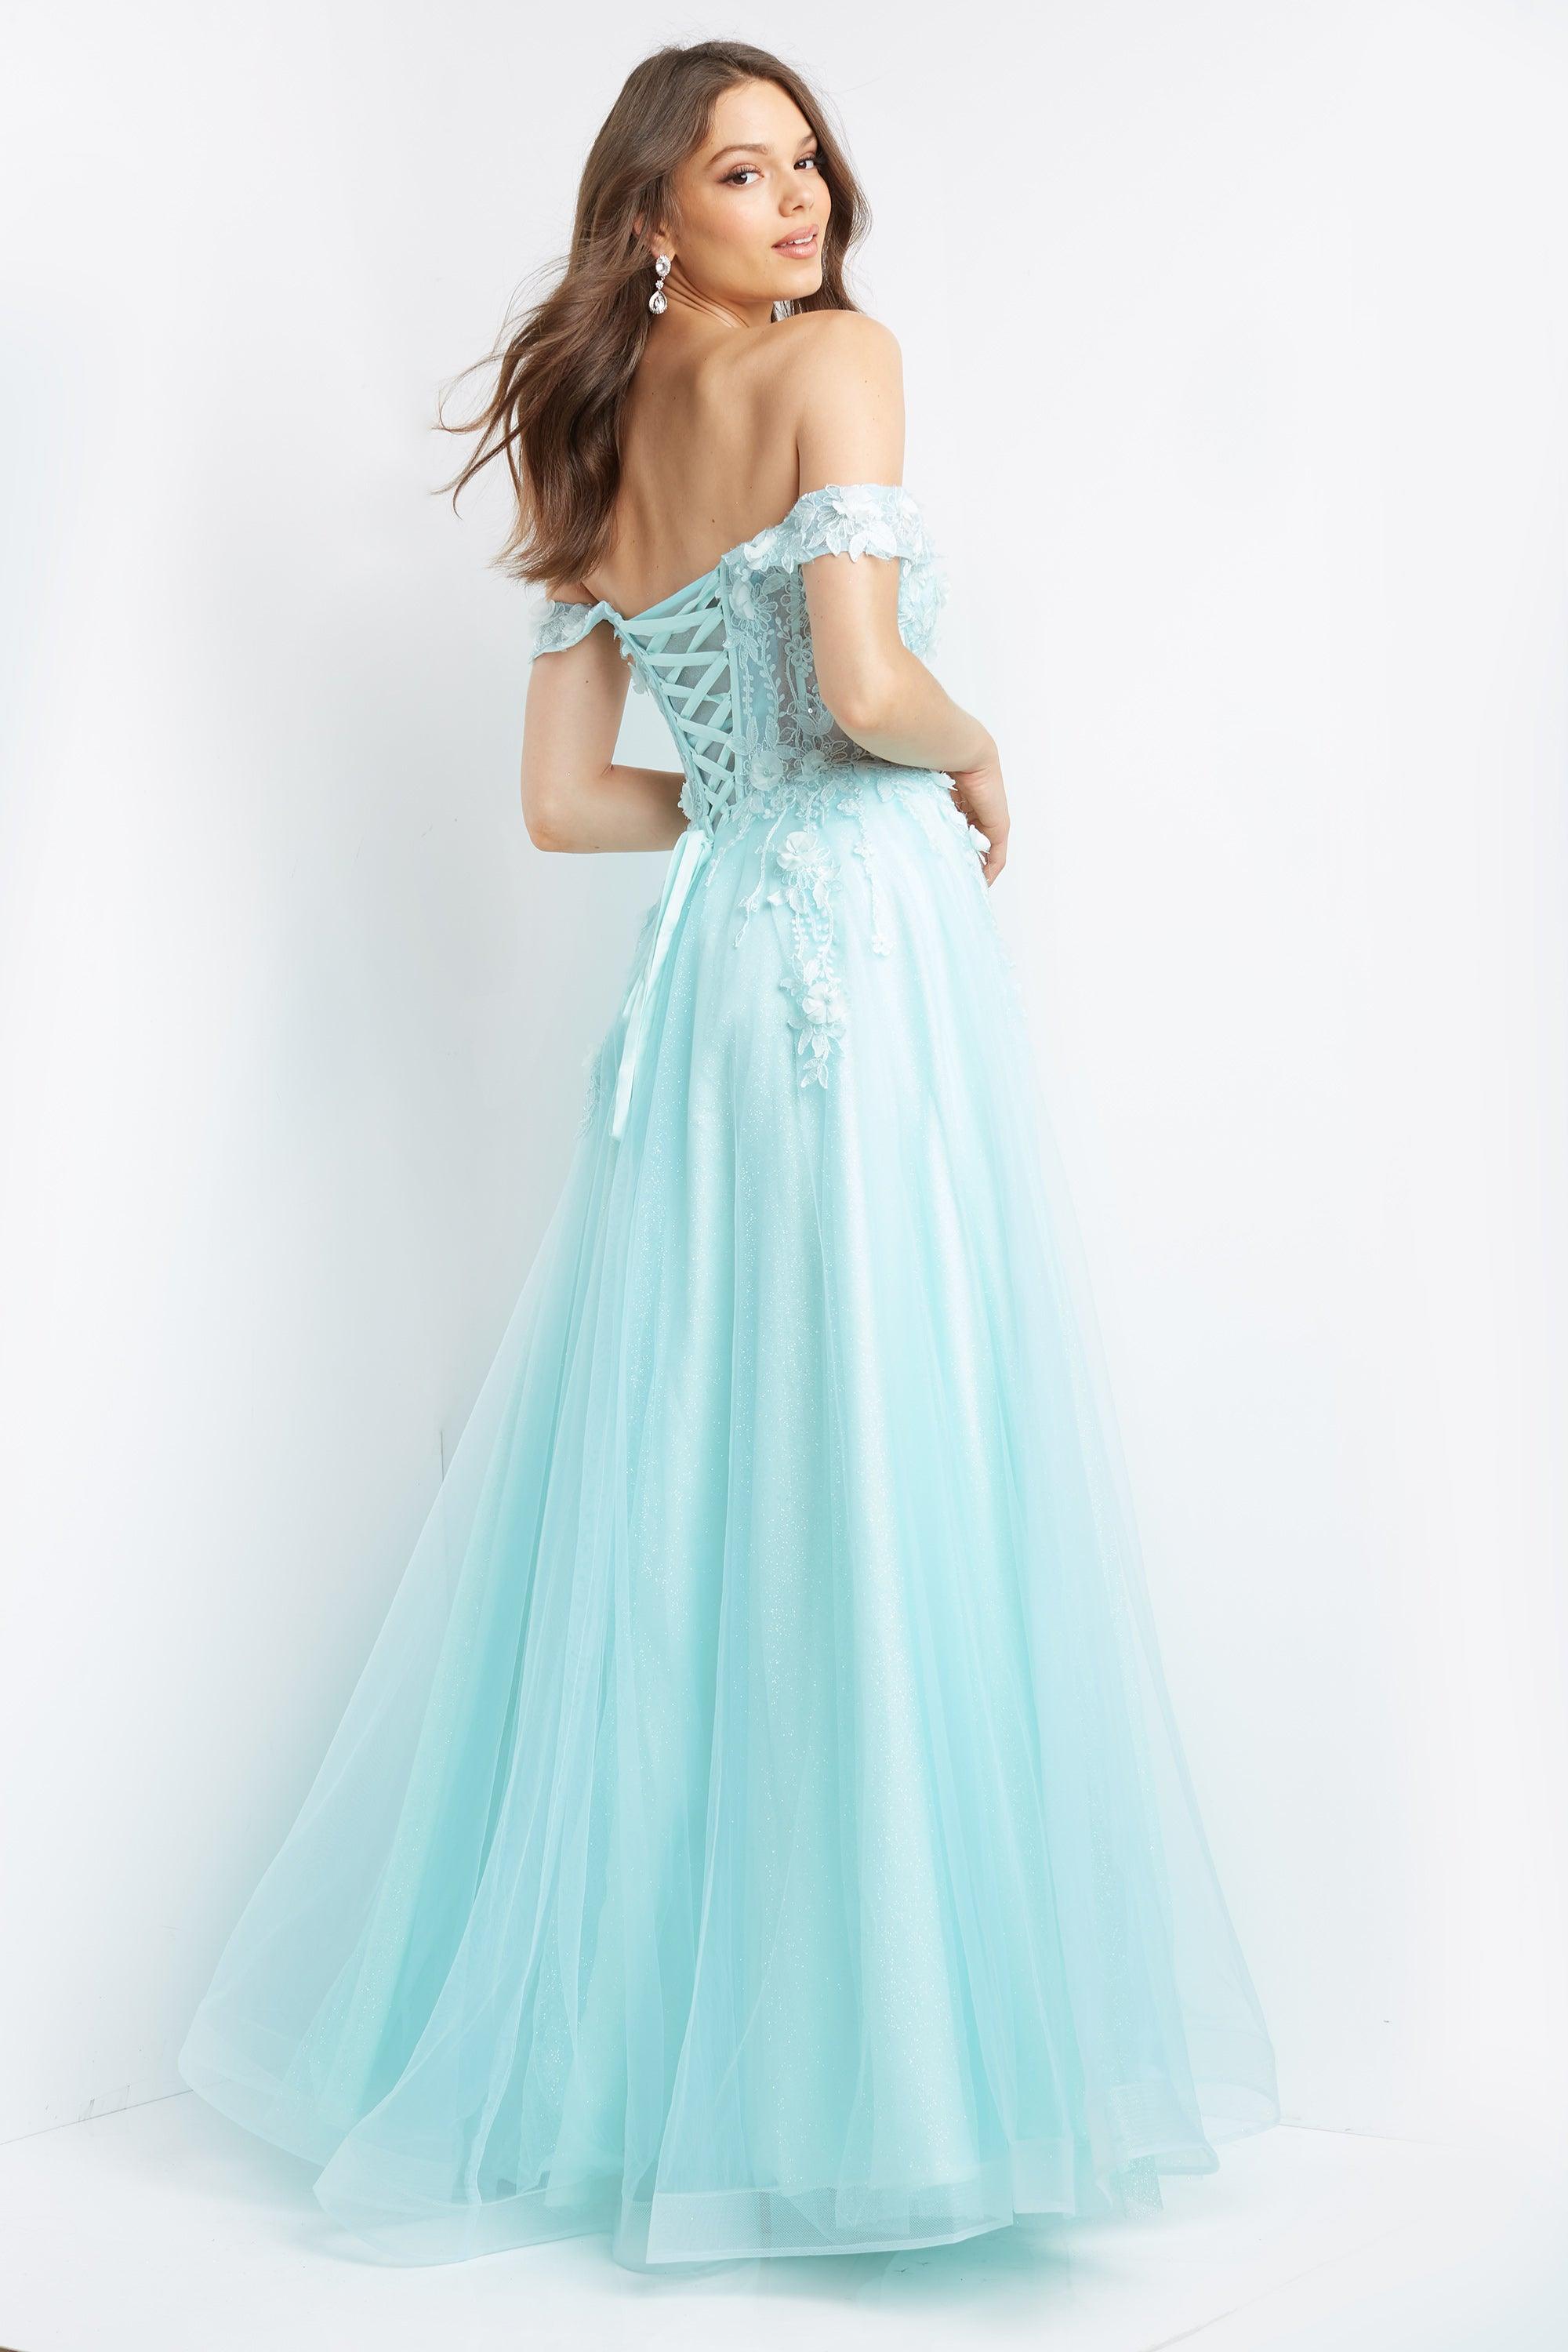 Jovani Off the Shoulder Long Prom Dress 08295 - The Dress Outlet